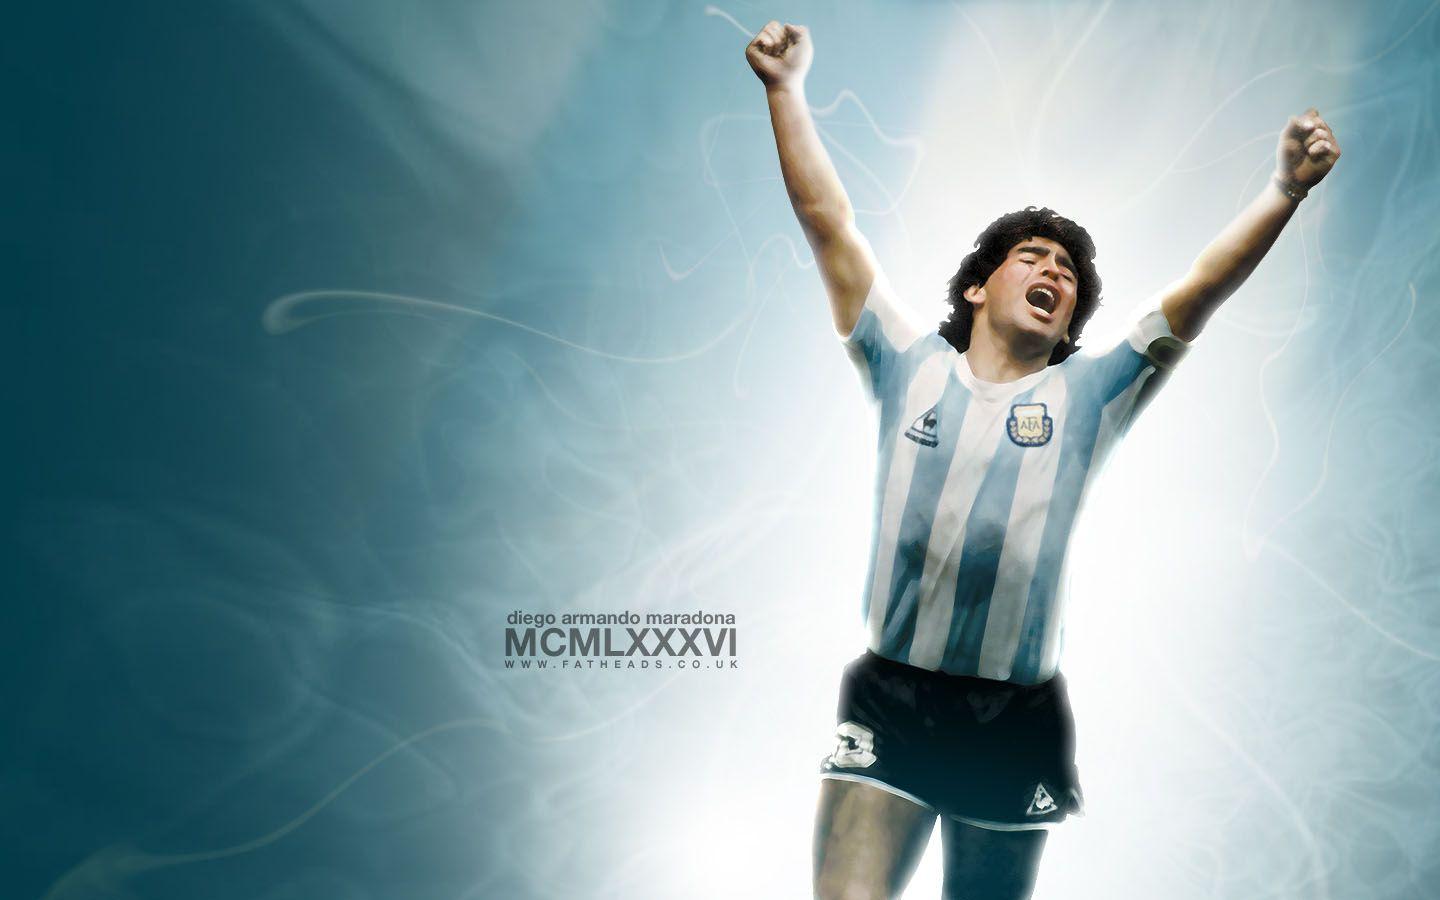 Maradona Wallpaper Free Maradona Background